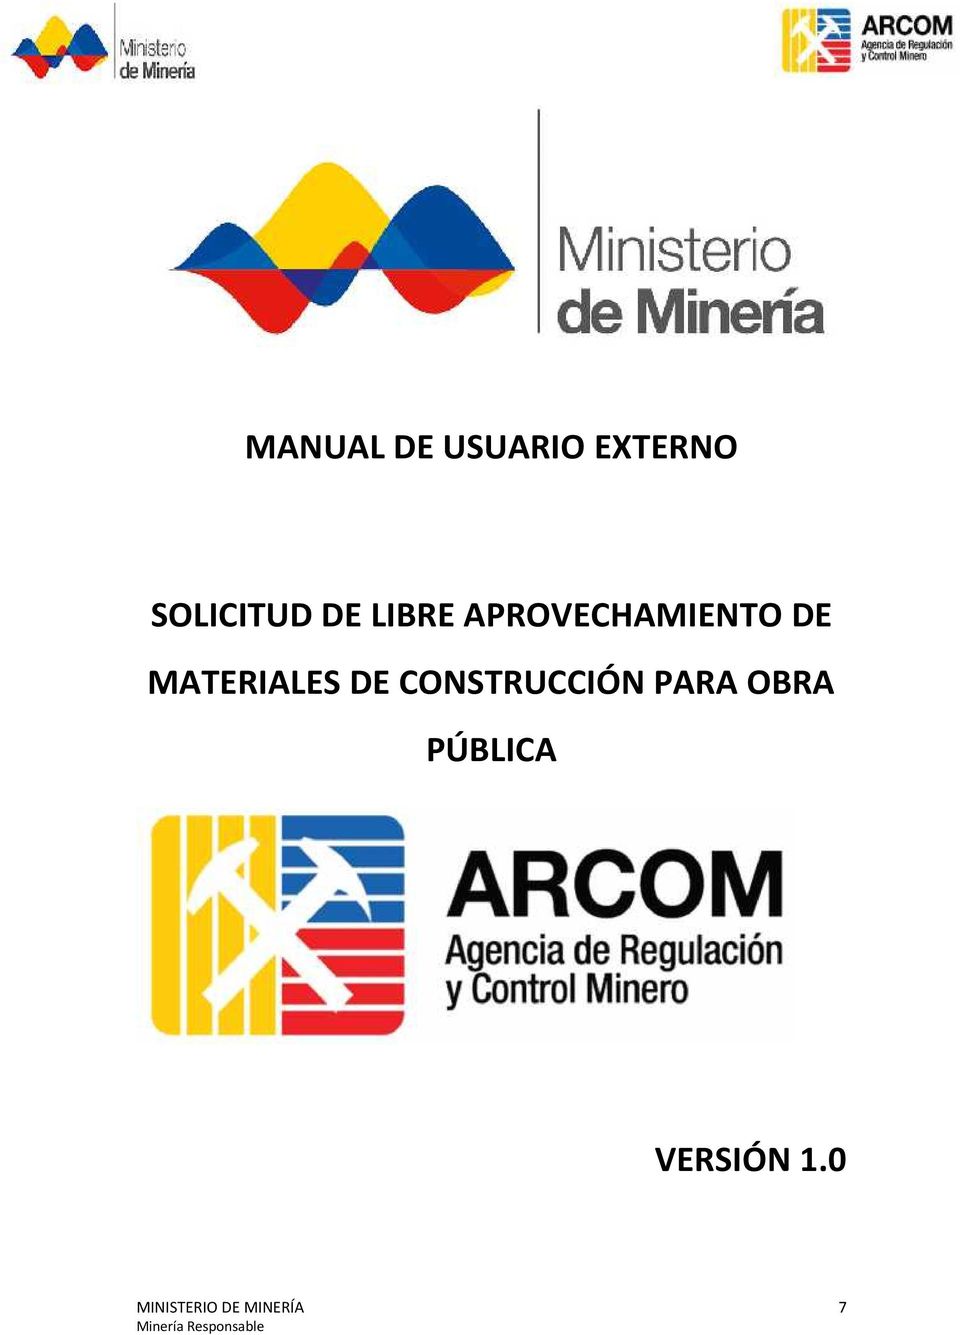 MATERIALES DE CONSTRUCCIÓN PARA